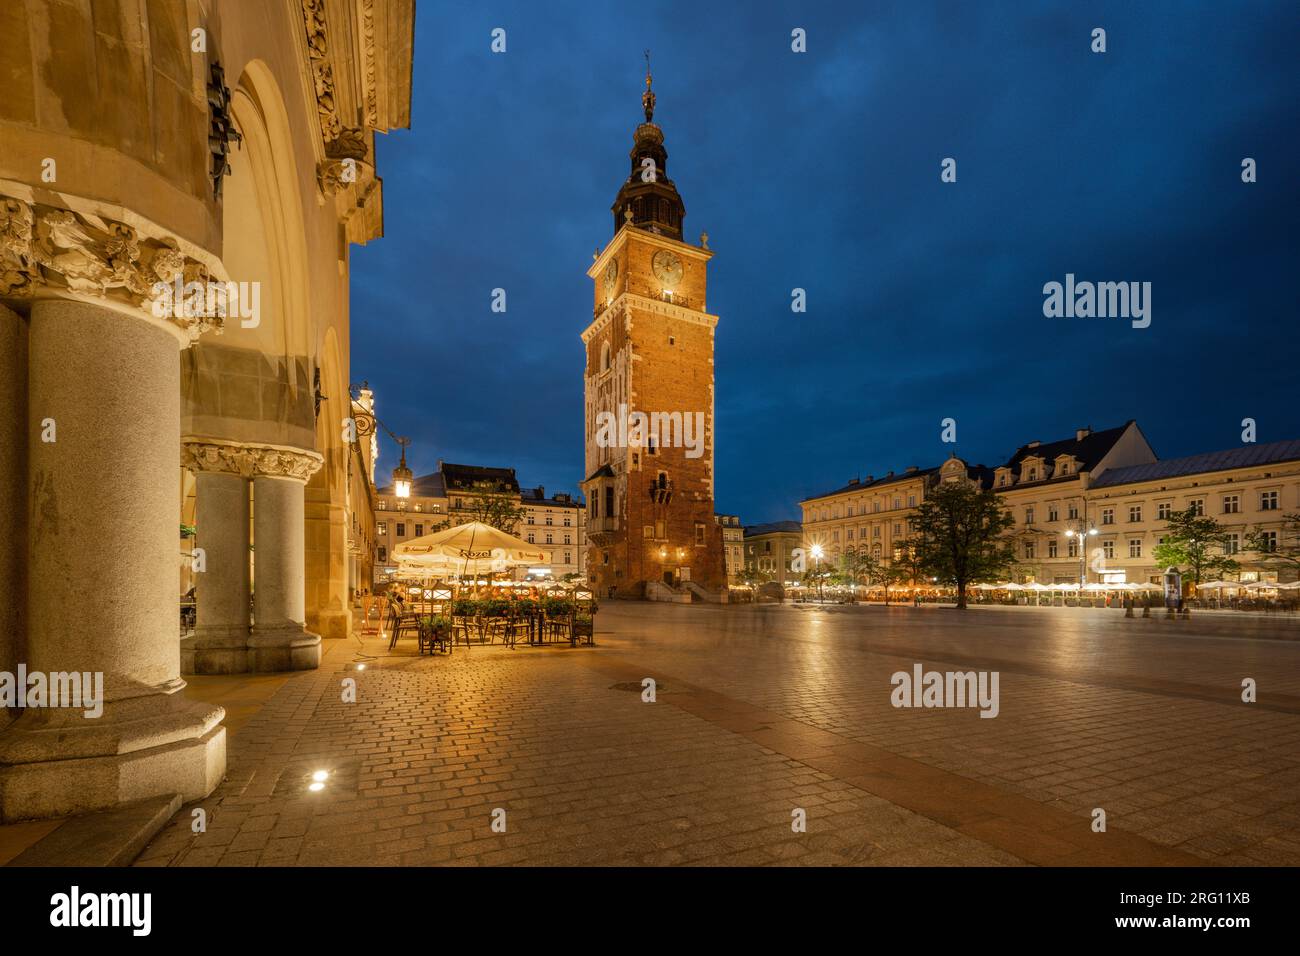 Main Market Square (Rynek Glowny) with Sukiennice (Cloth Hall) and St. Mary's (Mariacki) Church, Poland, Krakow. Stock Photo